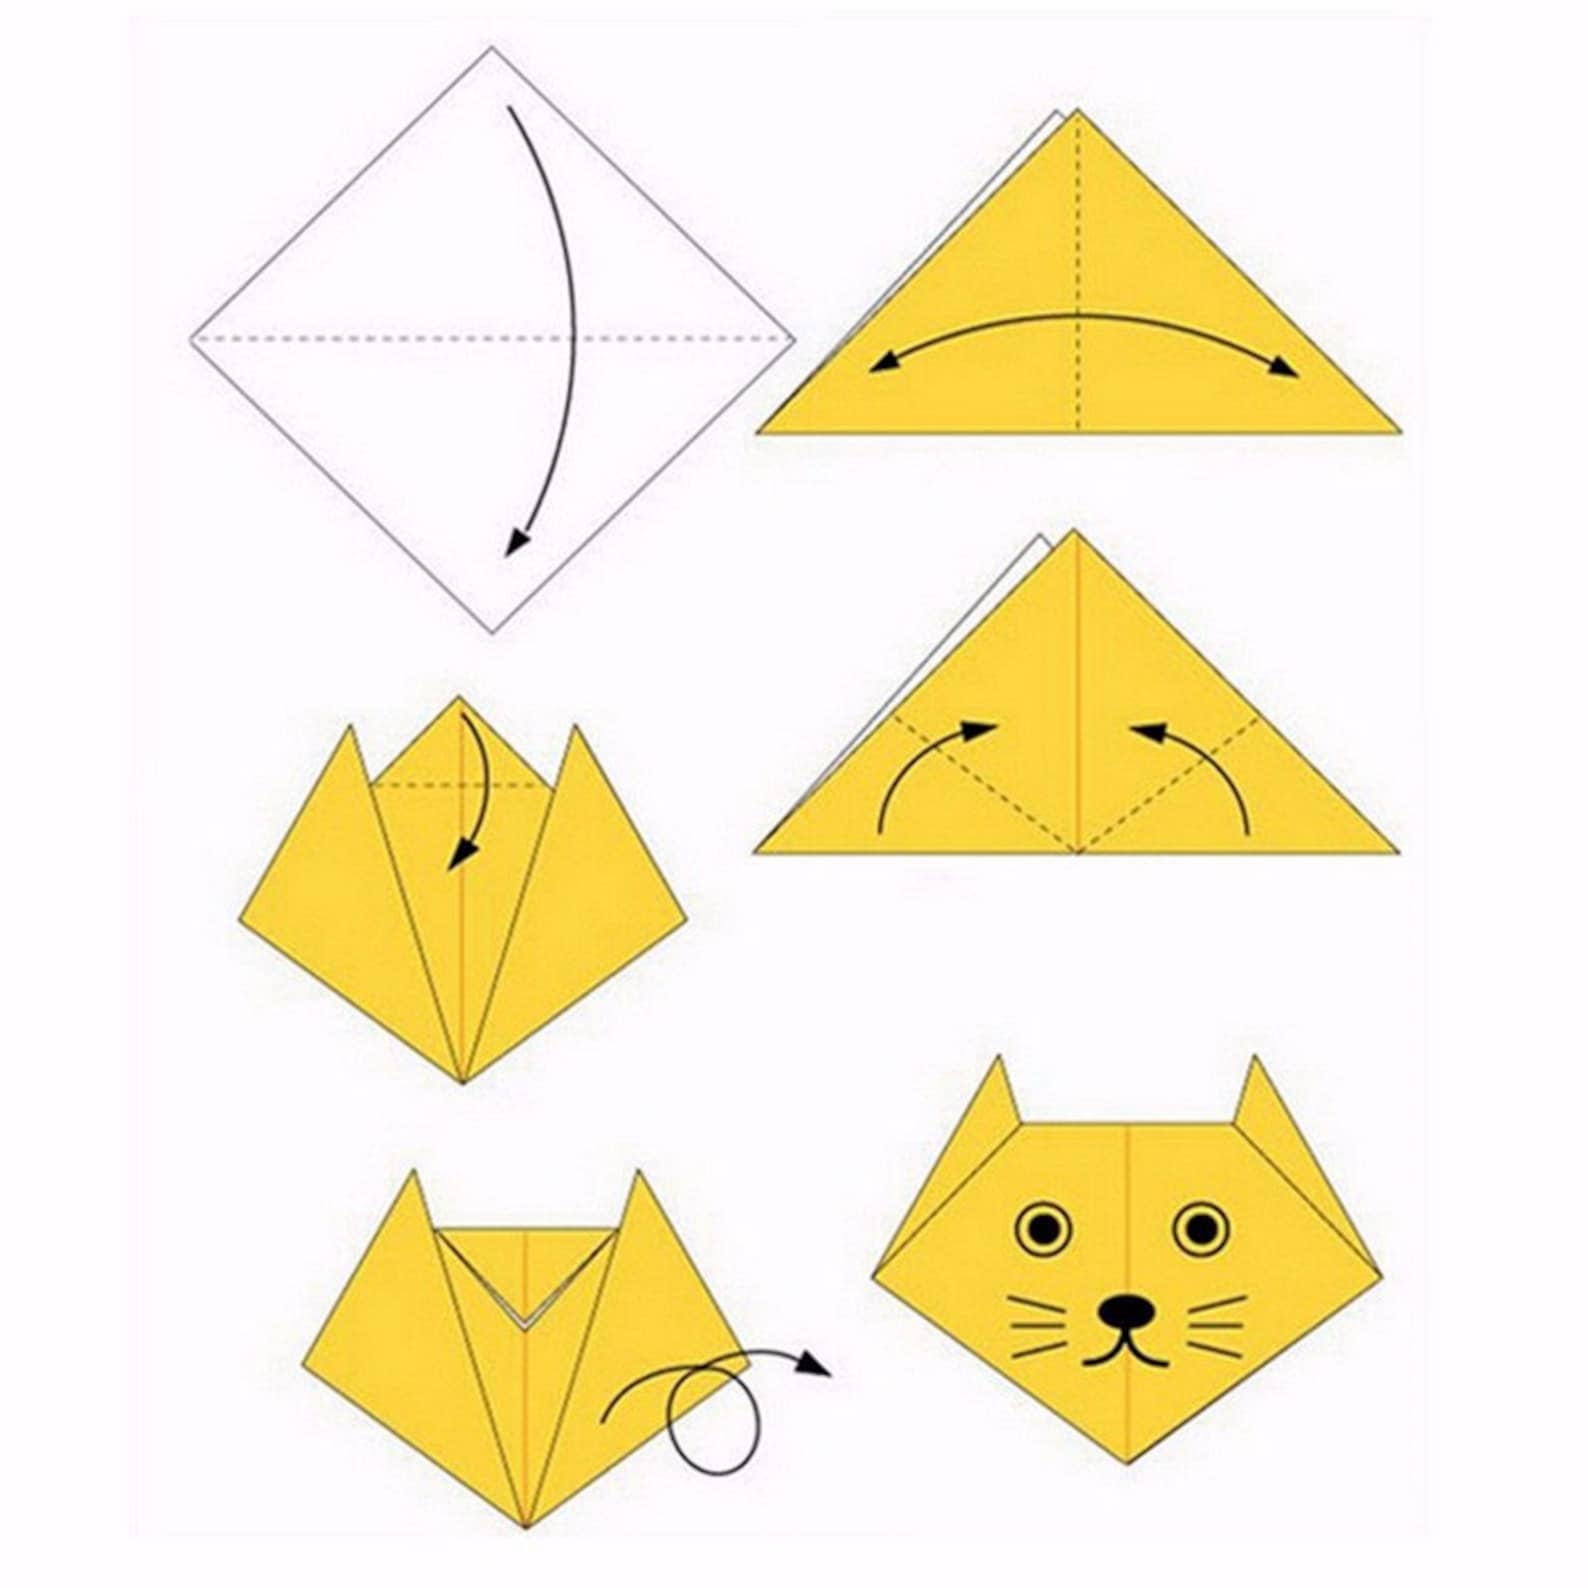 Как сделать маленький оригами. Как сделать модельку из бумаги а 4. Простое оригами из бумаги для начинающих. Оригами из бумаги для начинающих пошагово. Поделки оригами из бумаги своими руками для начинающих пошагово.